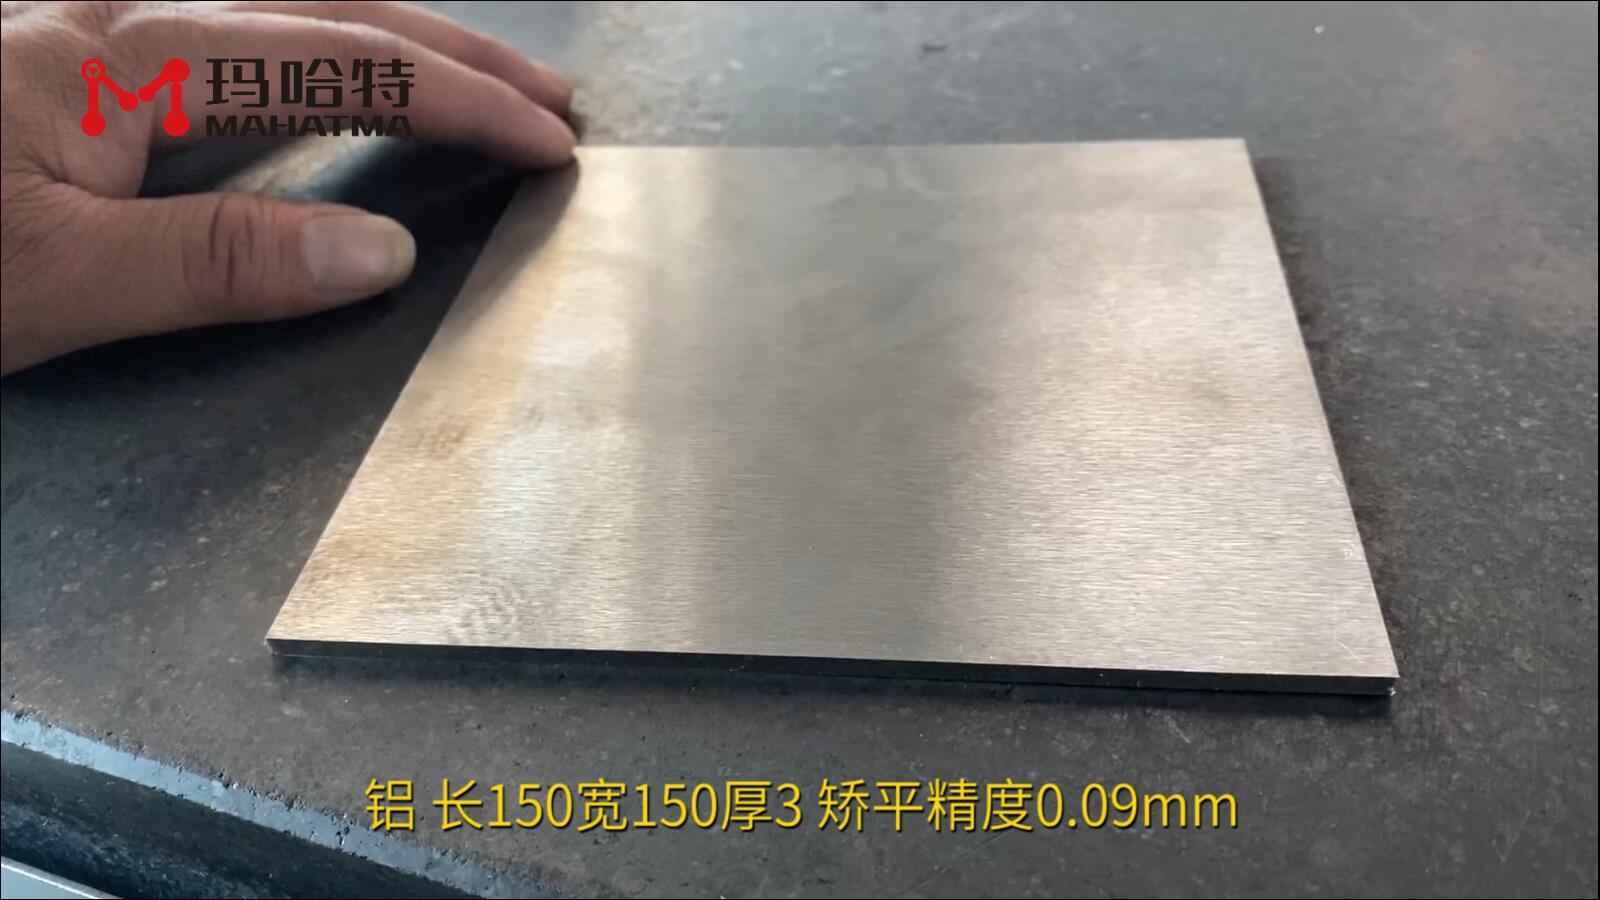 铝 MHT40-400 正方形 长150宽150厚3 矫平精度0.09mm